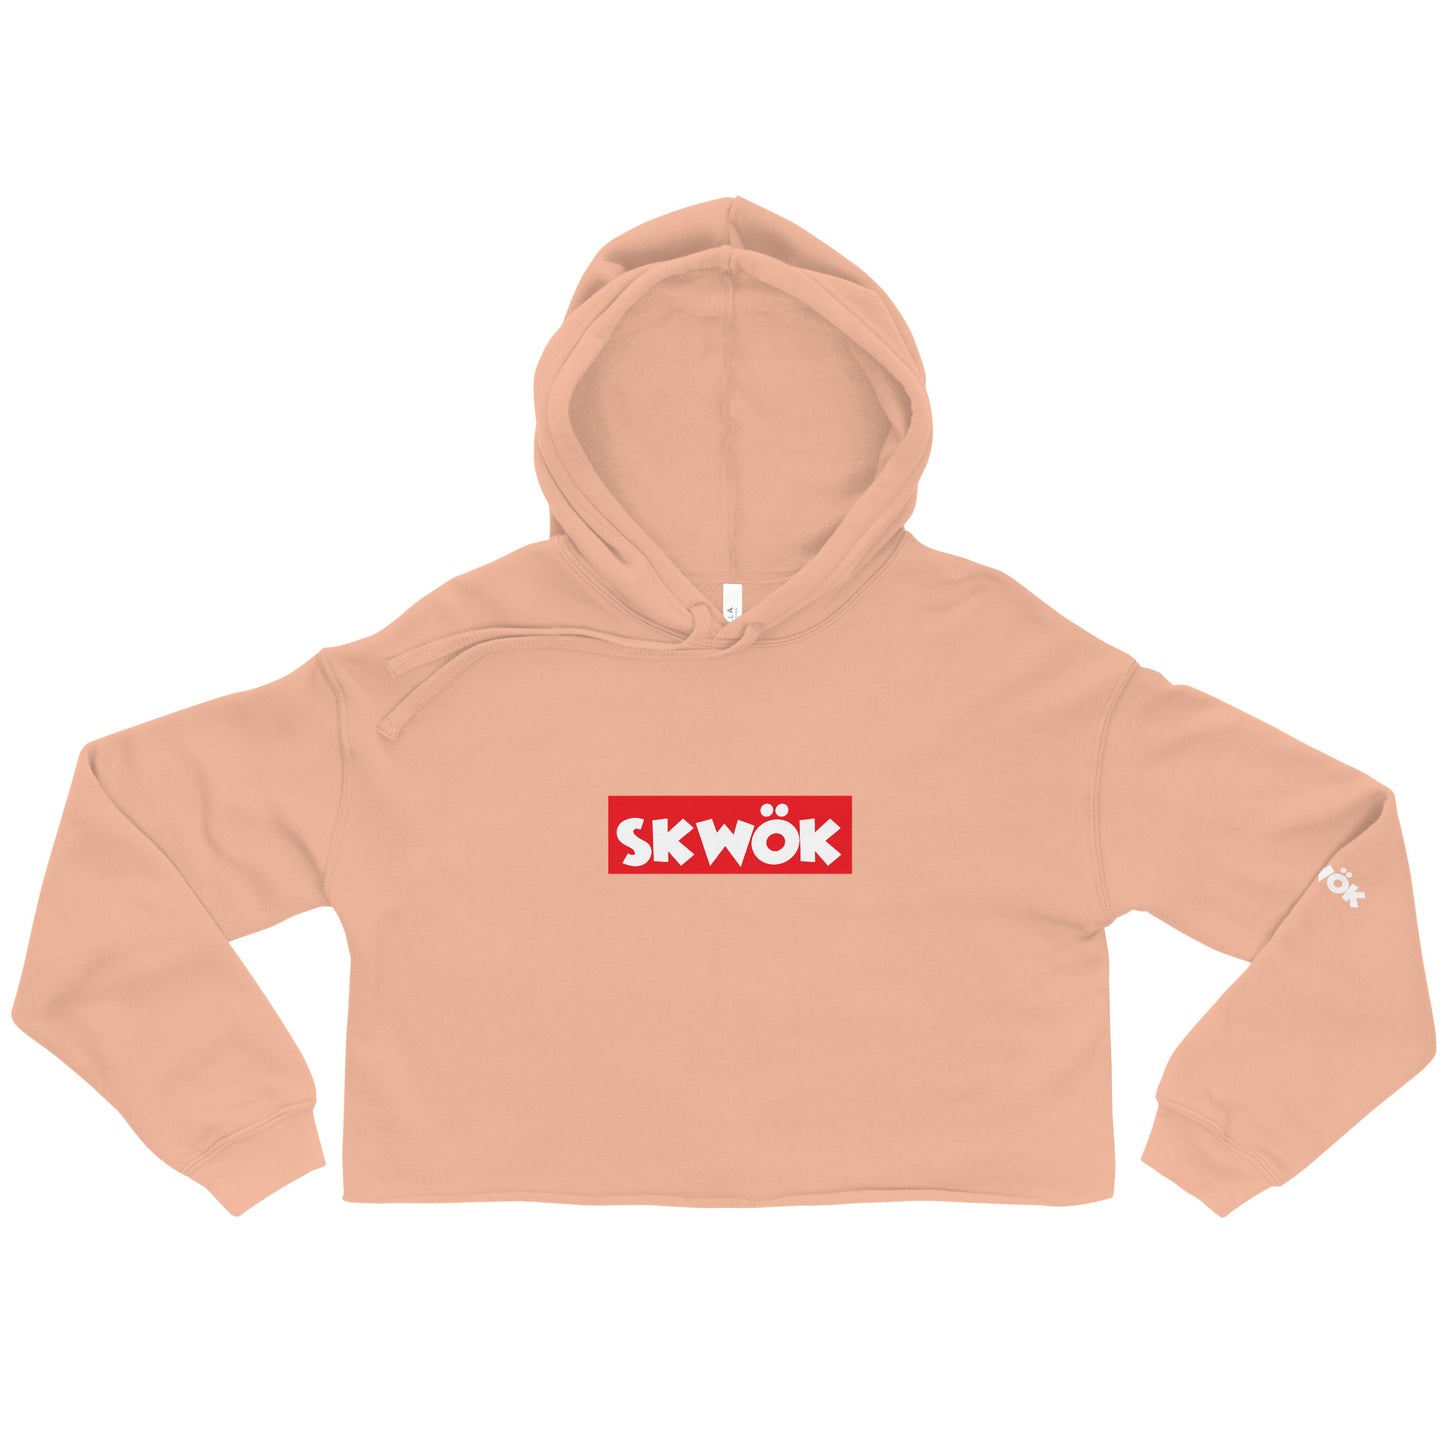 Skwok Brand / Crop / Hoodie / Red Box